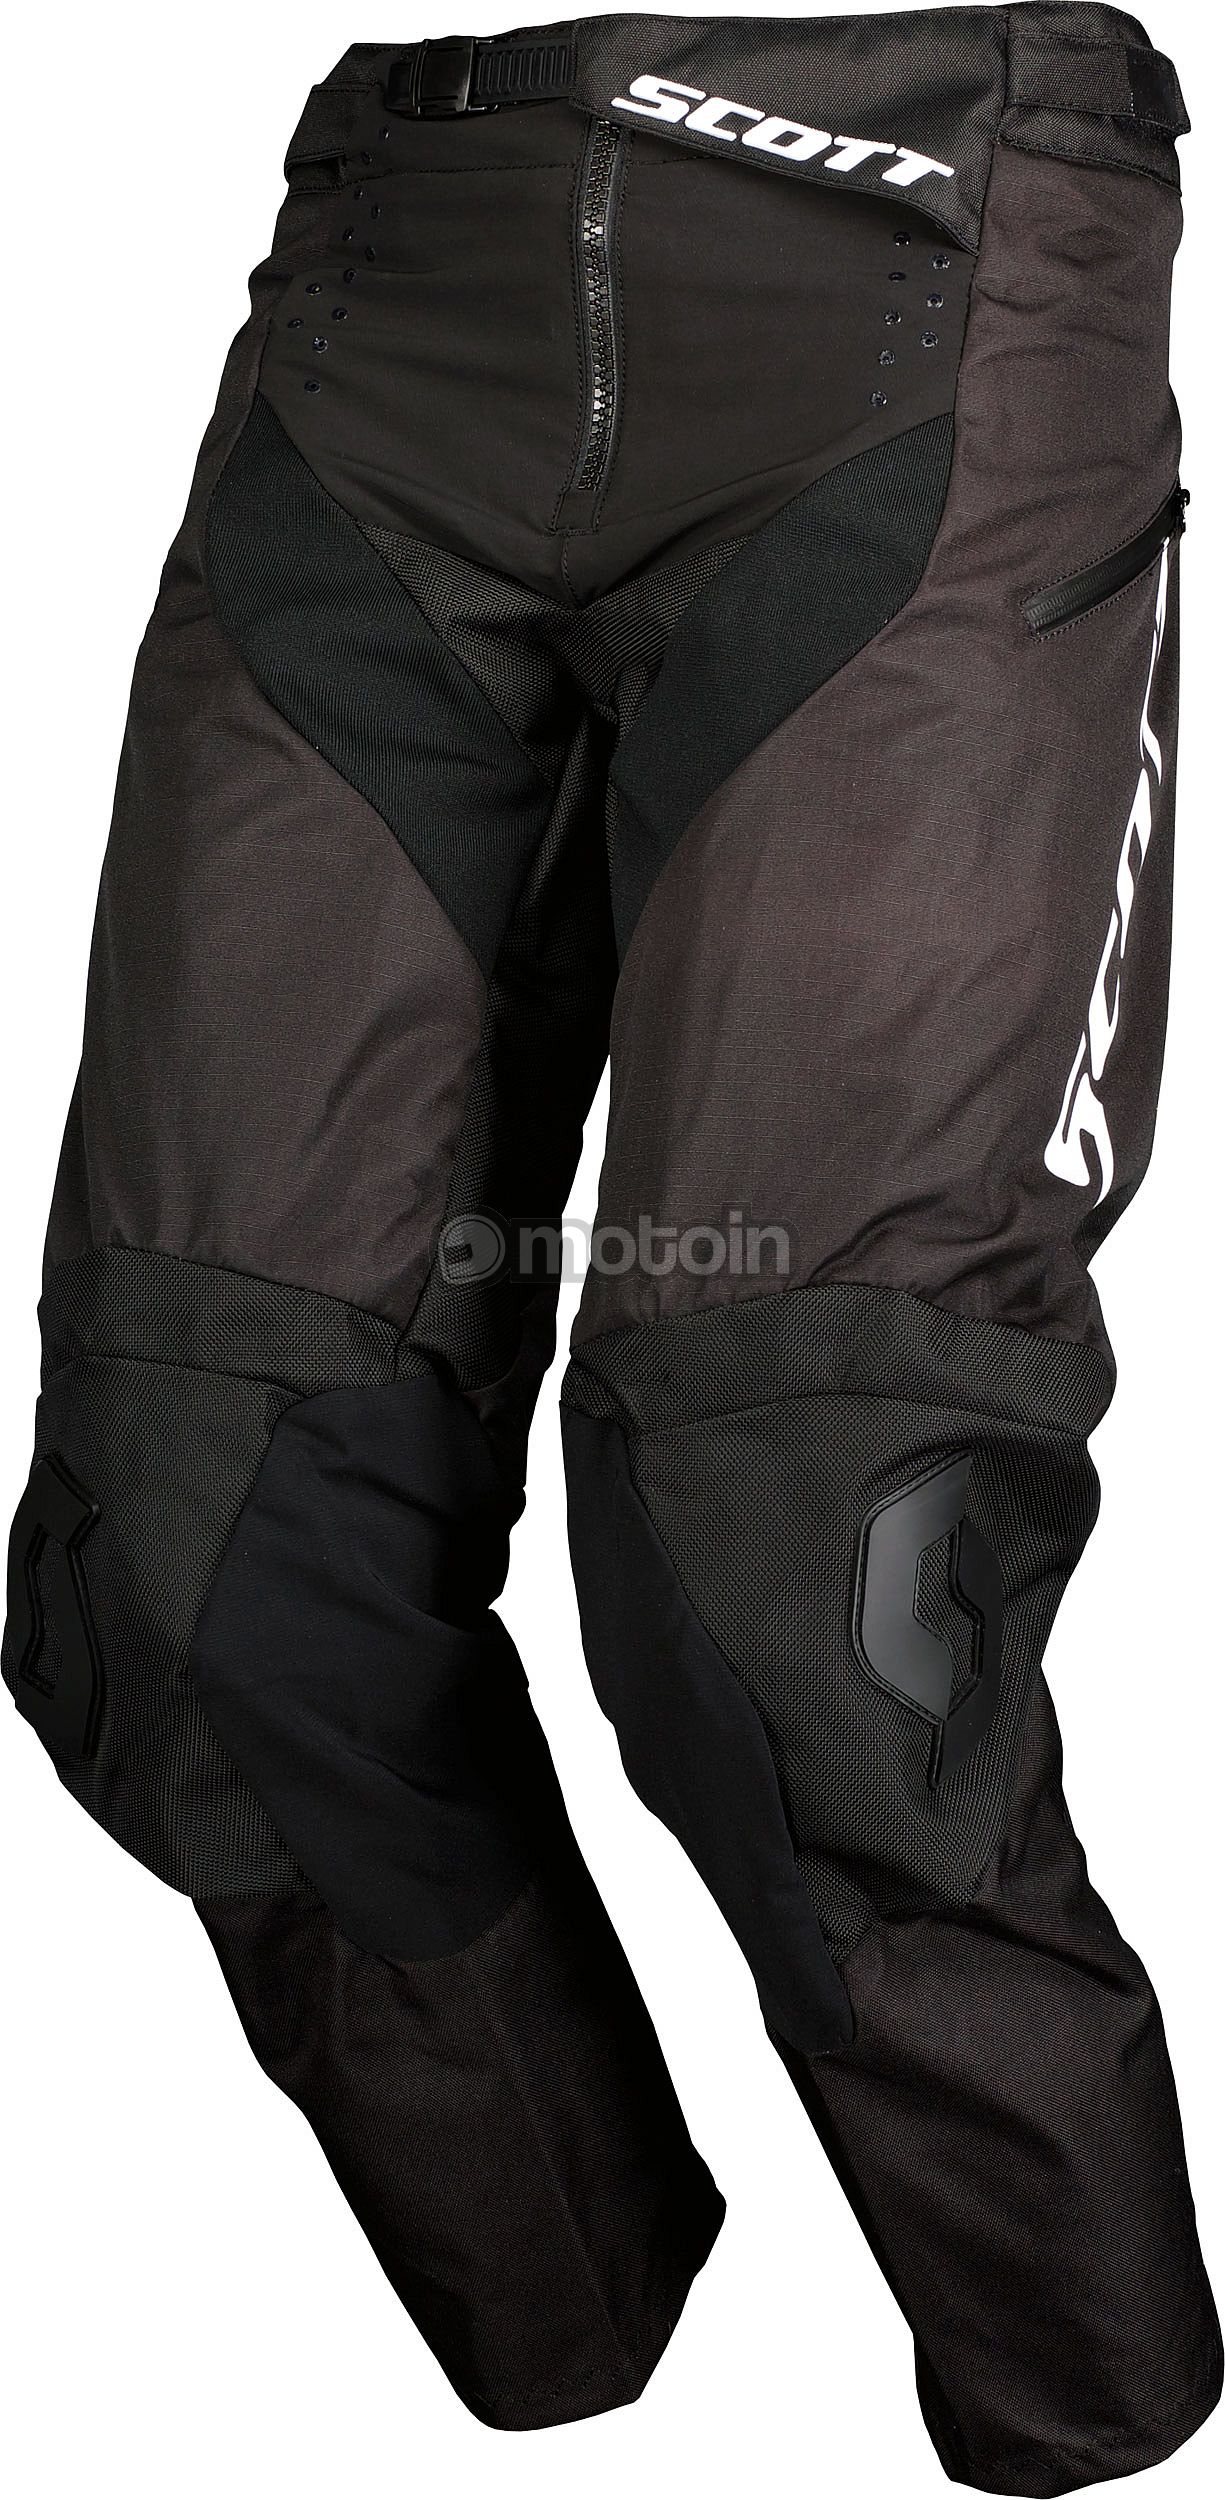 Scott X-Plore Swap ITB S23, pantalon en textile dans les bottes